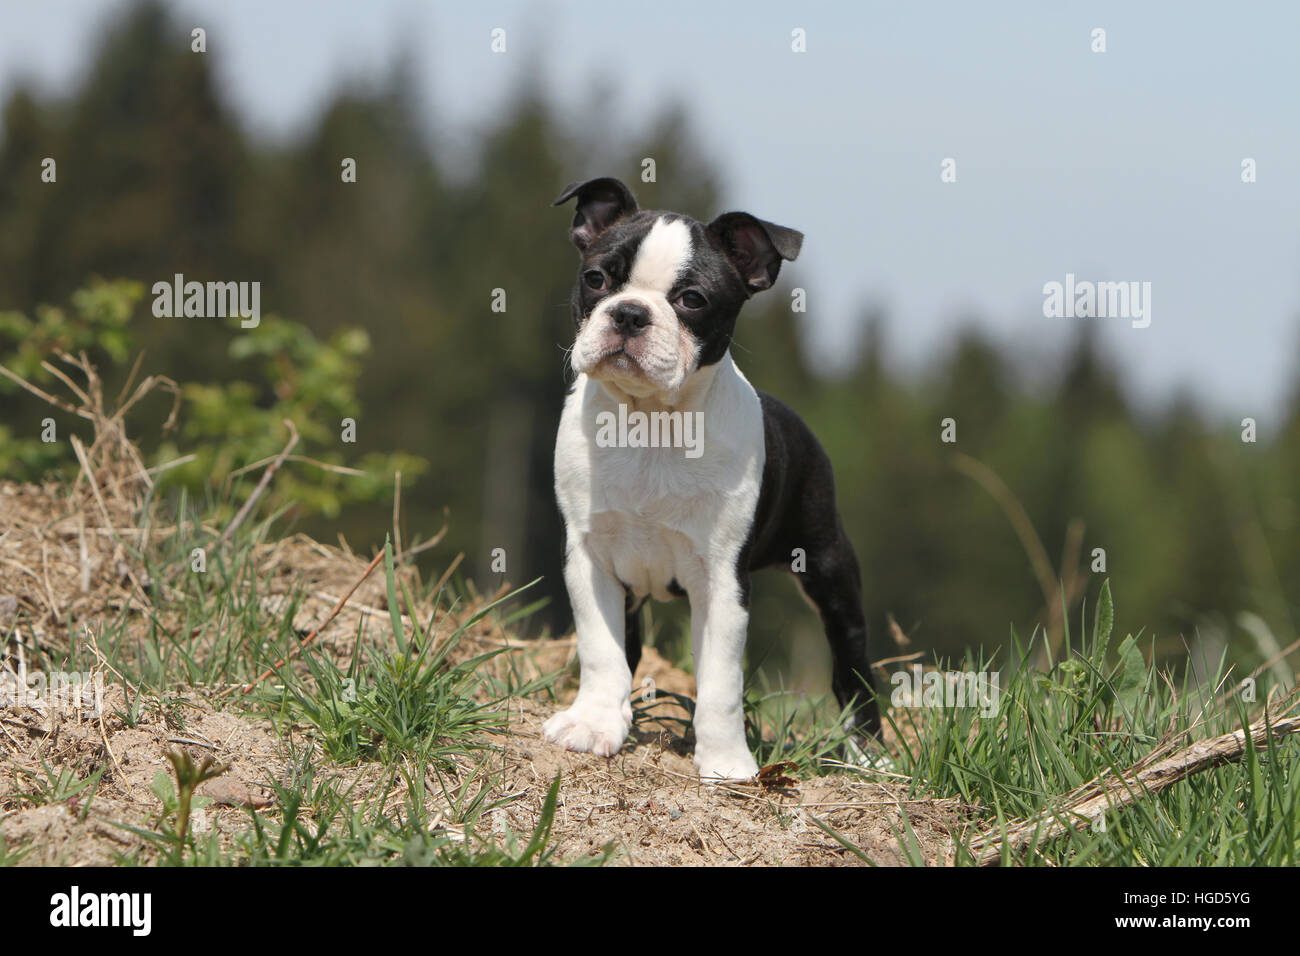 Chien Boston Terrier puppy noir avec blanc debout face Banque D'Images